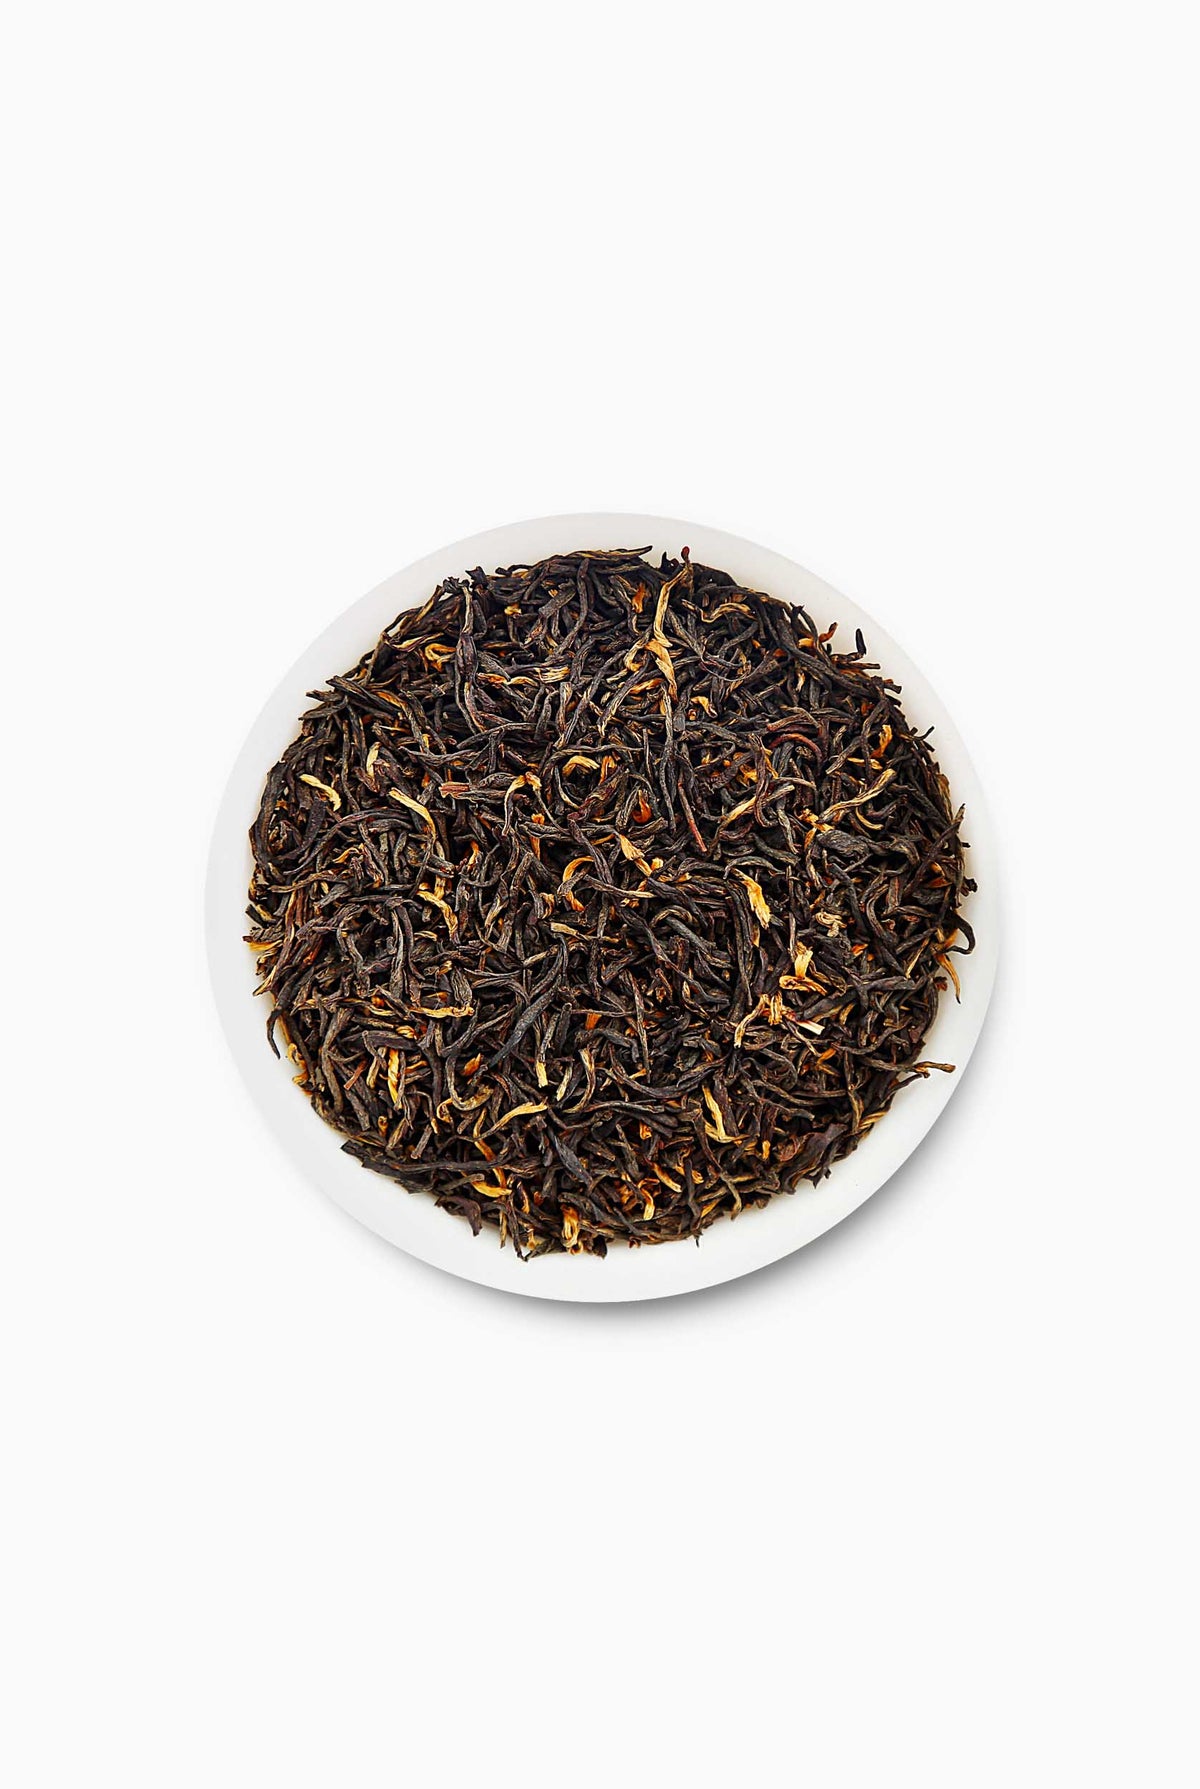 Halmari Gold Orthodox Black Tea